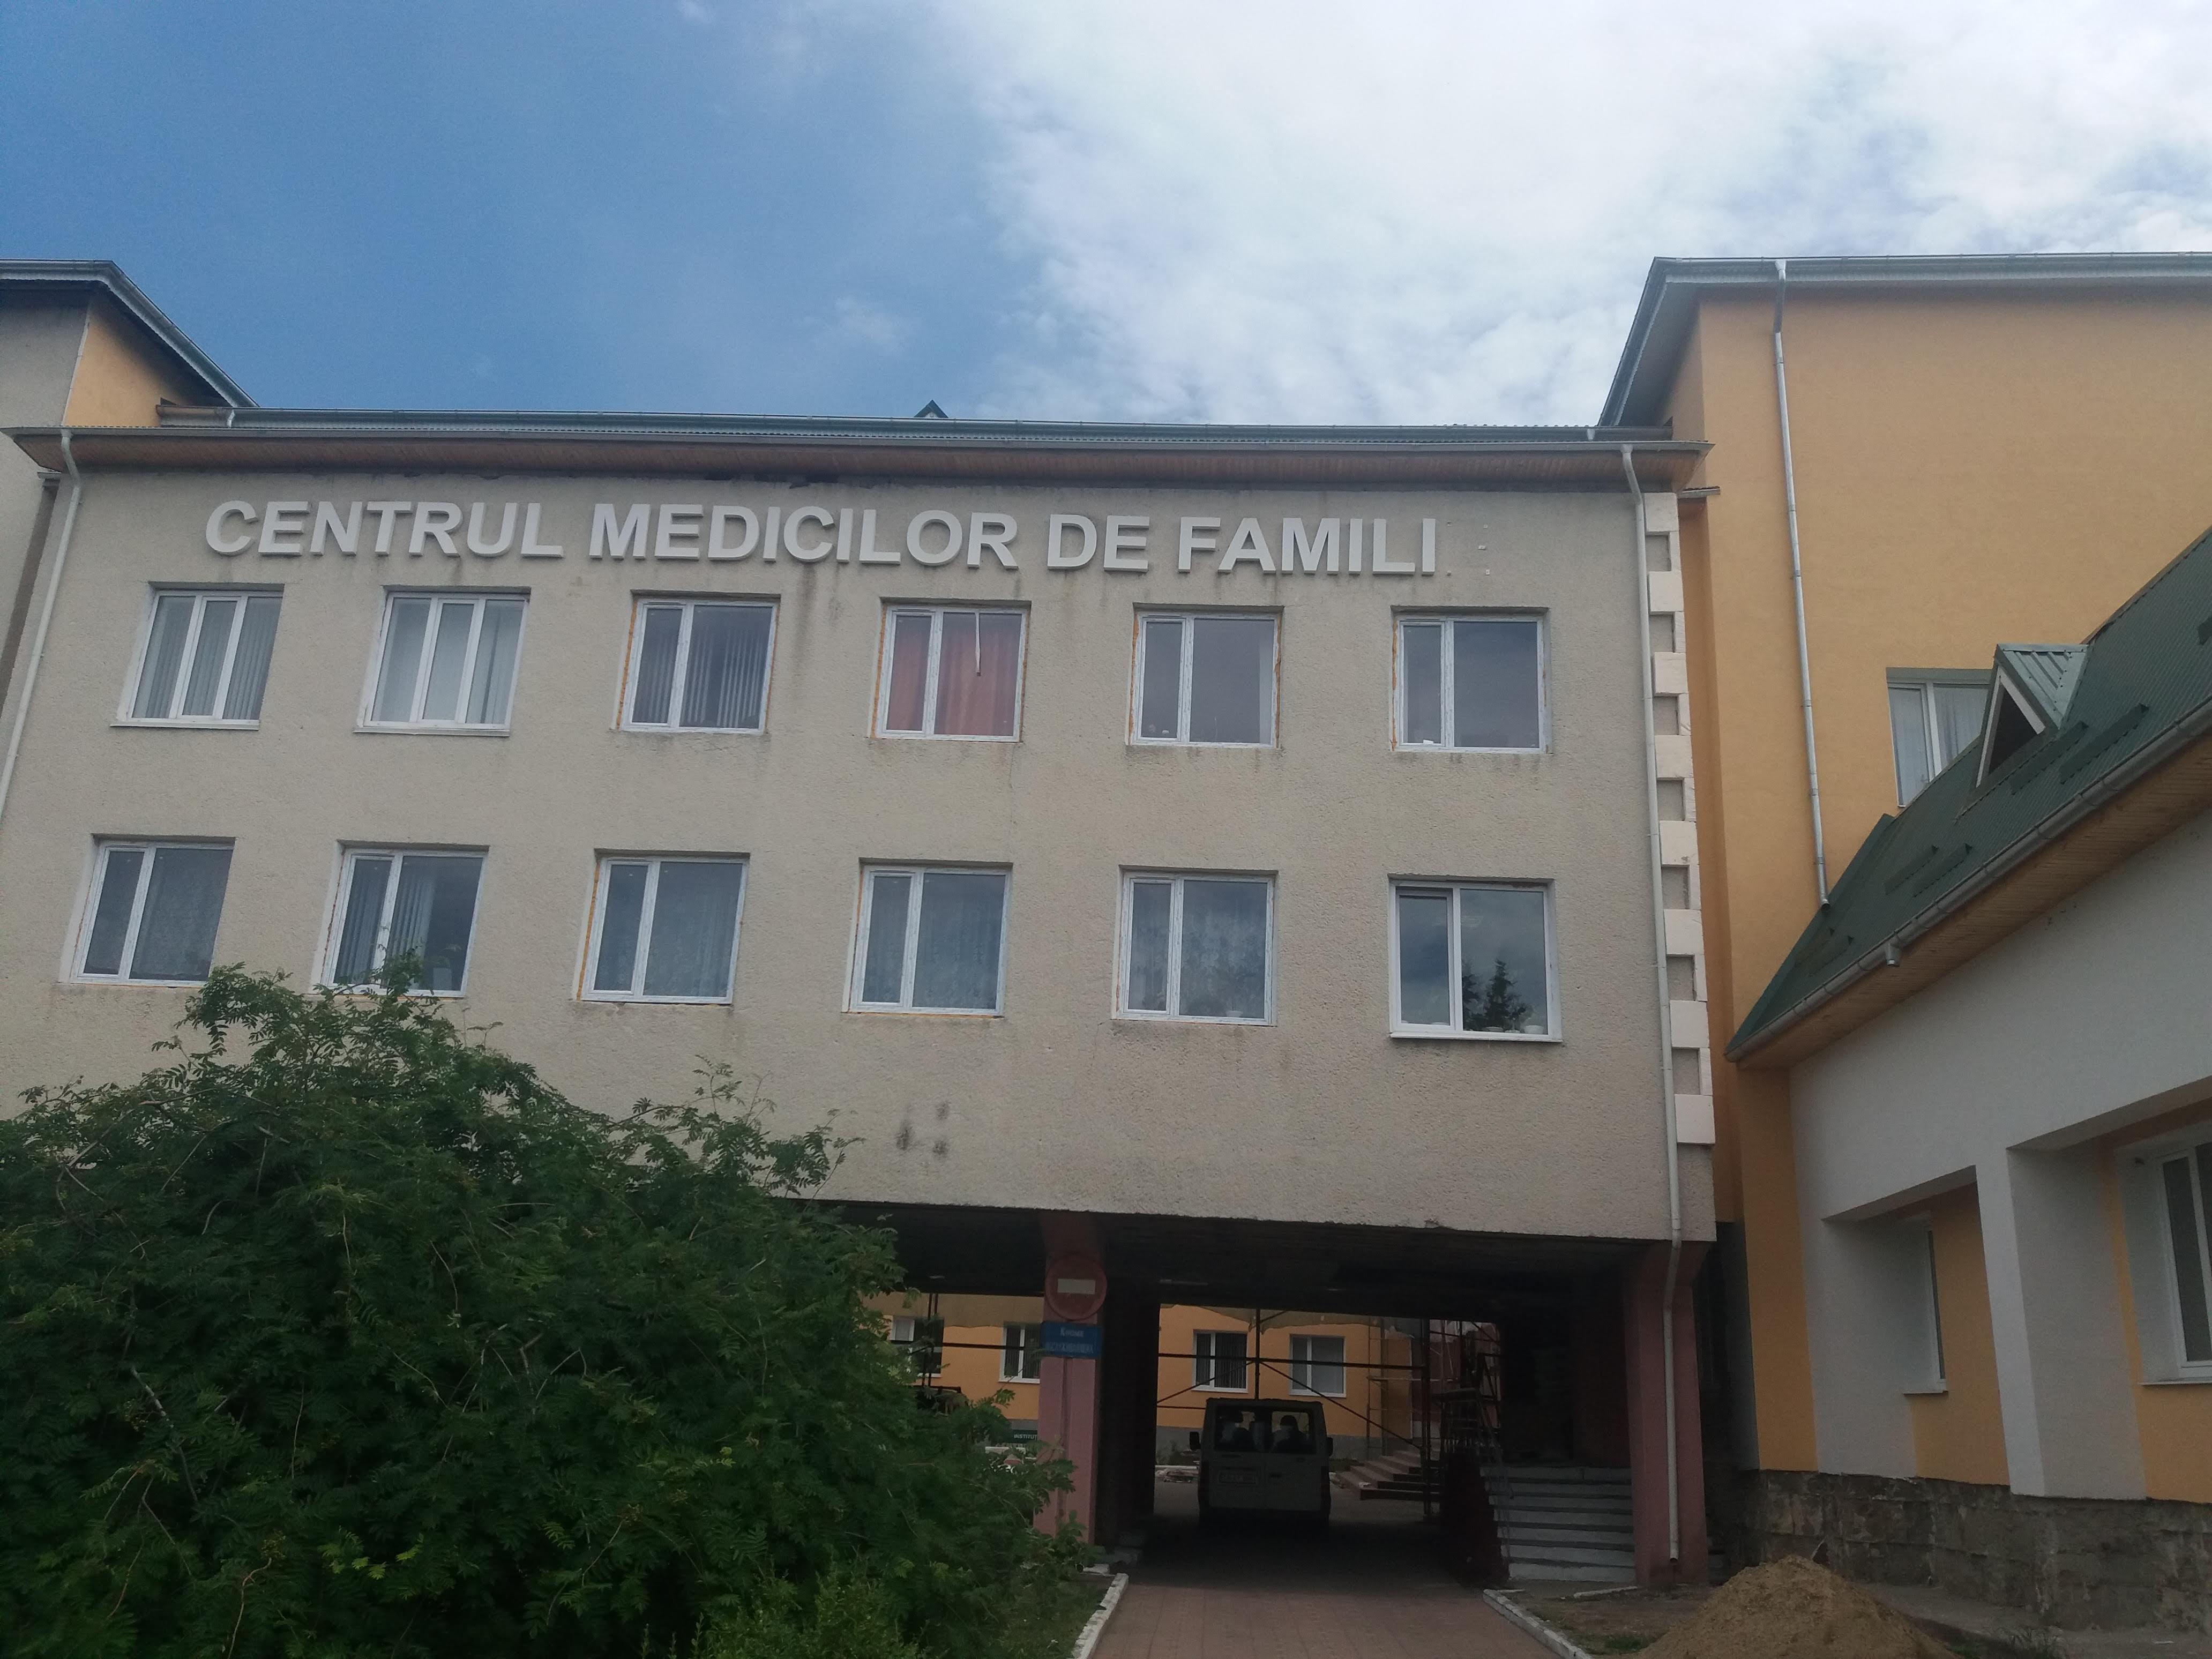 Centrul medicilor de familie